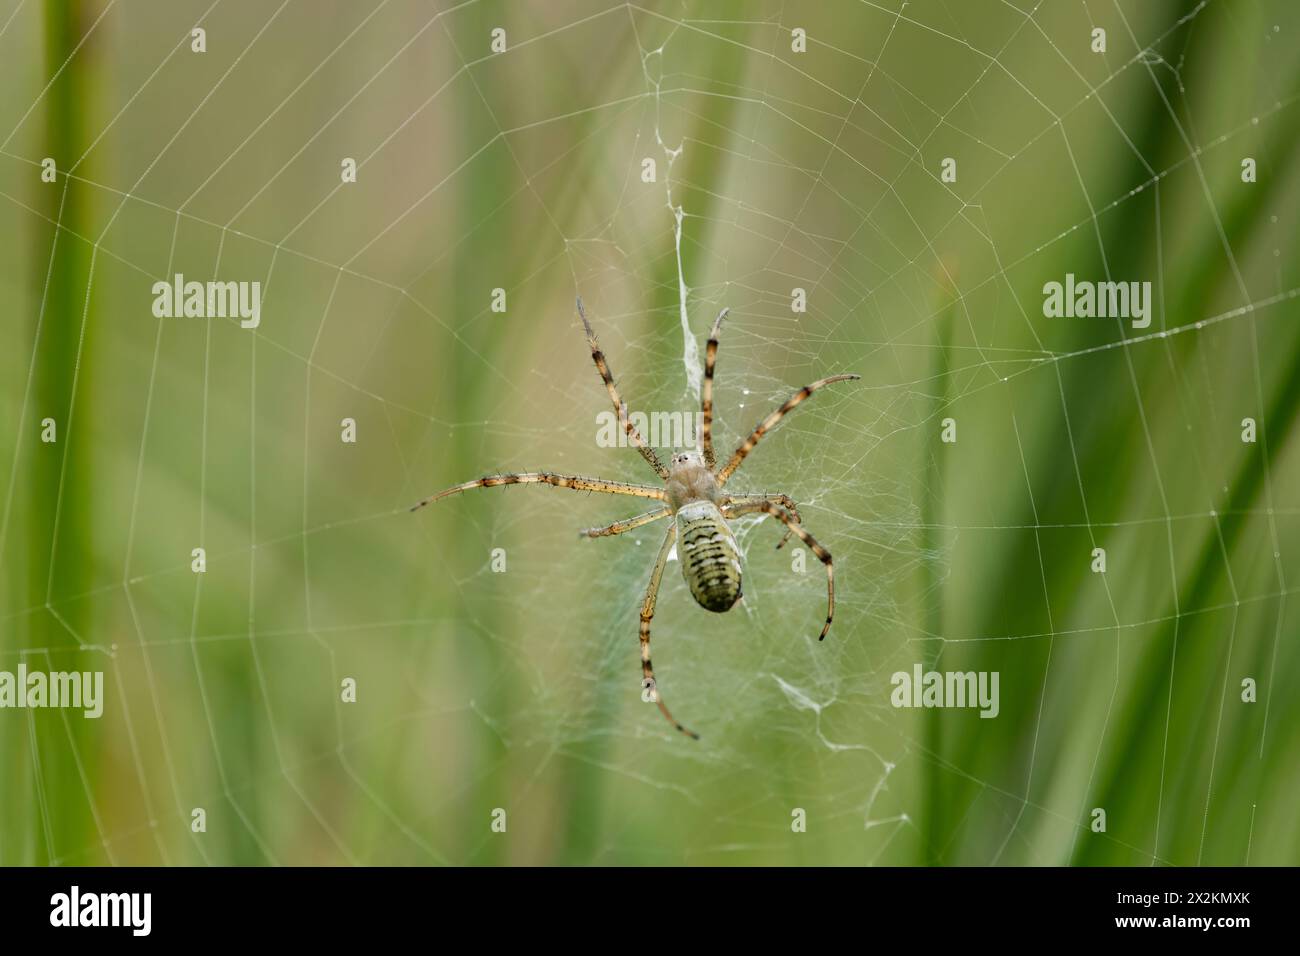 Une guêpe araignée assise dans sa toile, journée ensoleillée à Vienne Autriche Autriche Banque D'Images